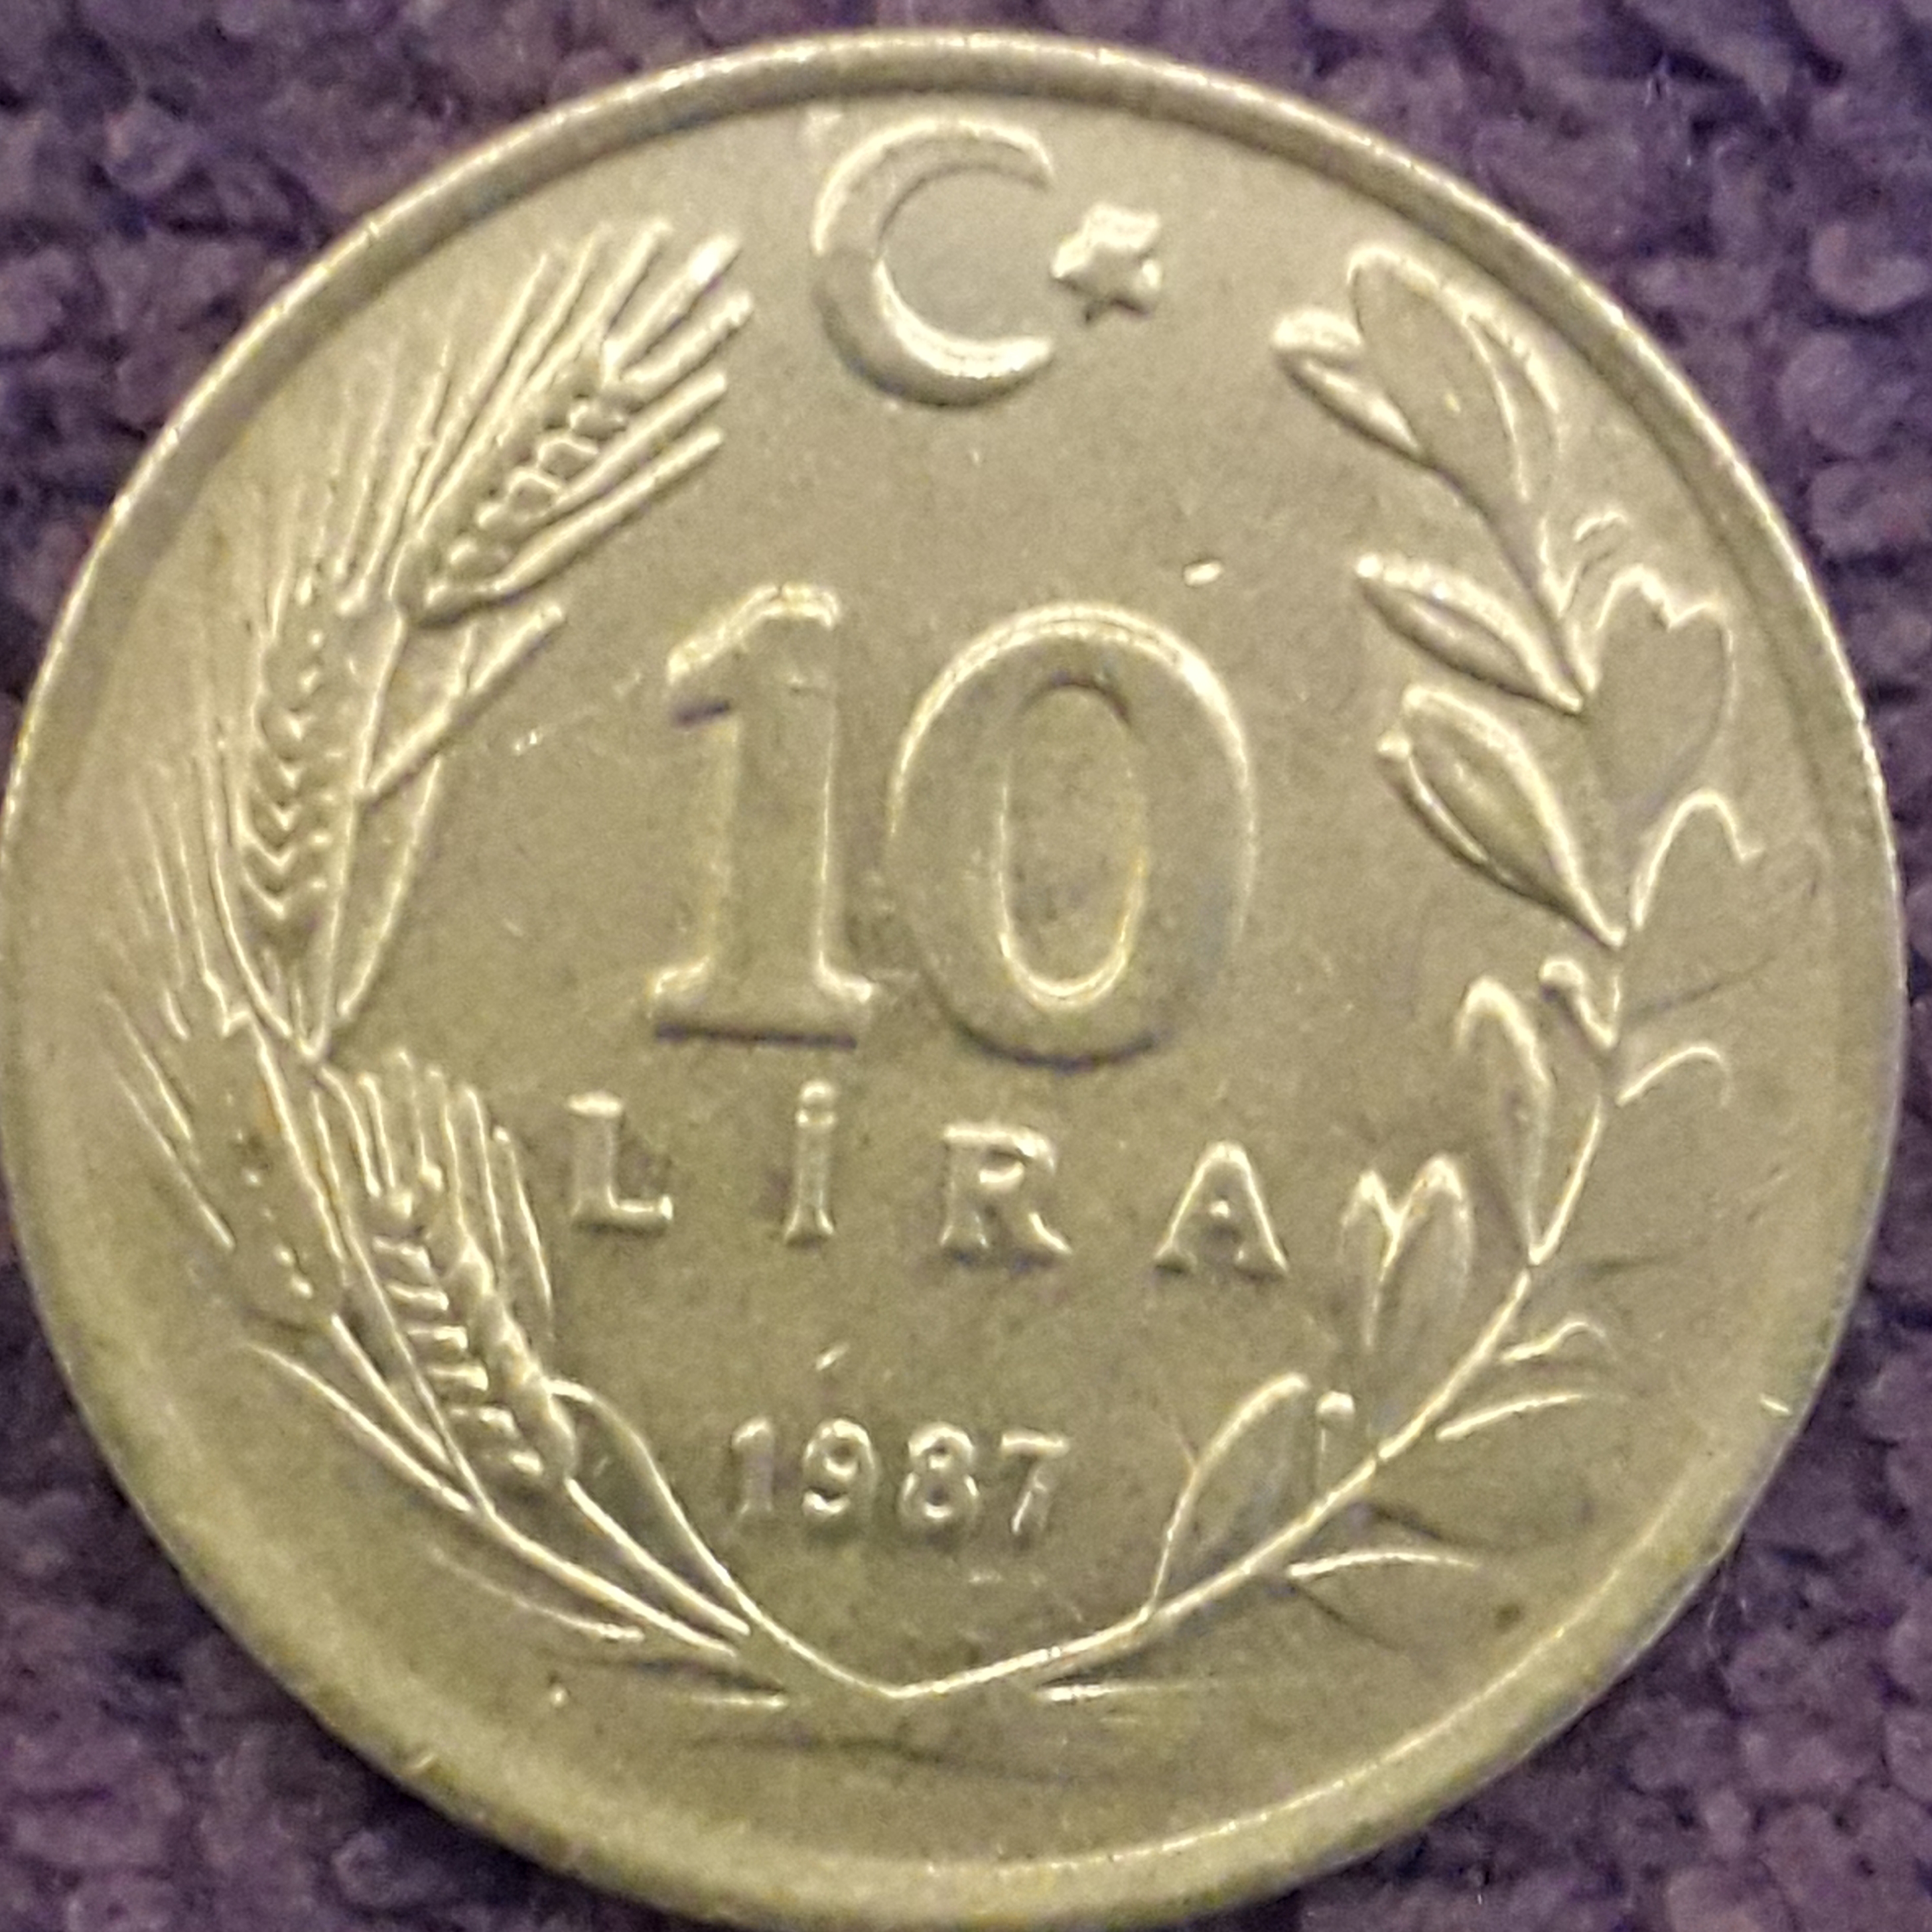 10 Lira (Silik Baskı) 1987 Arka Yüz